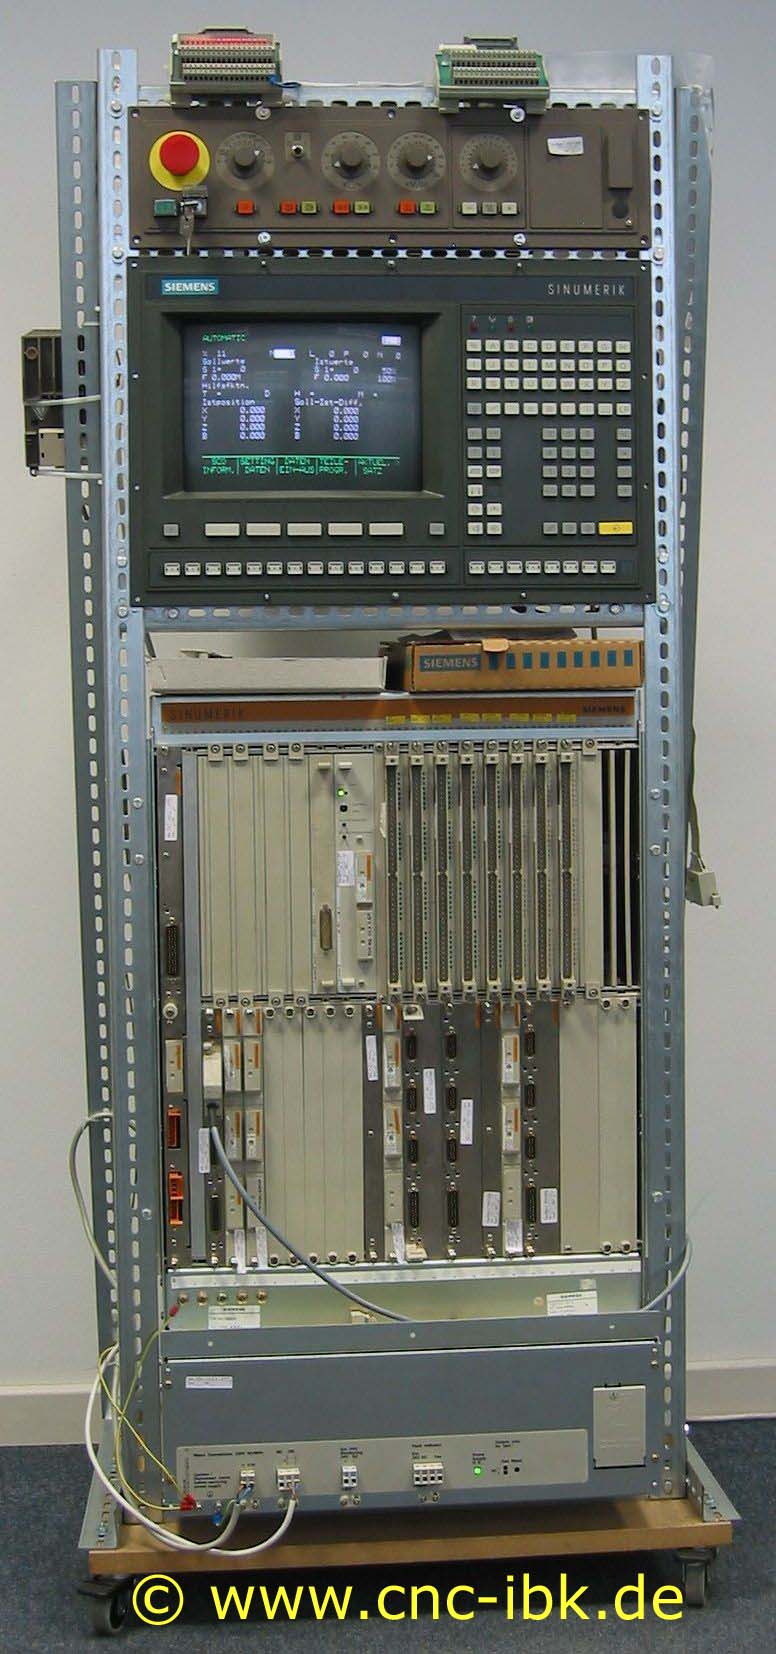 Sinumerik System 850M